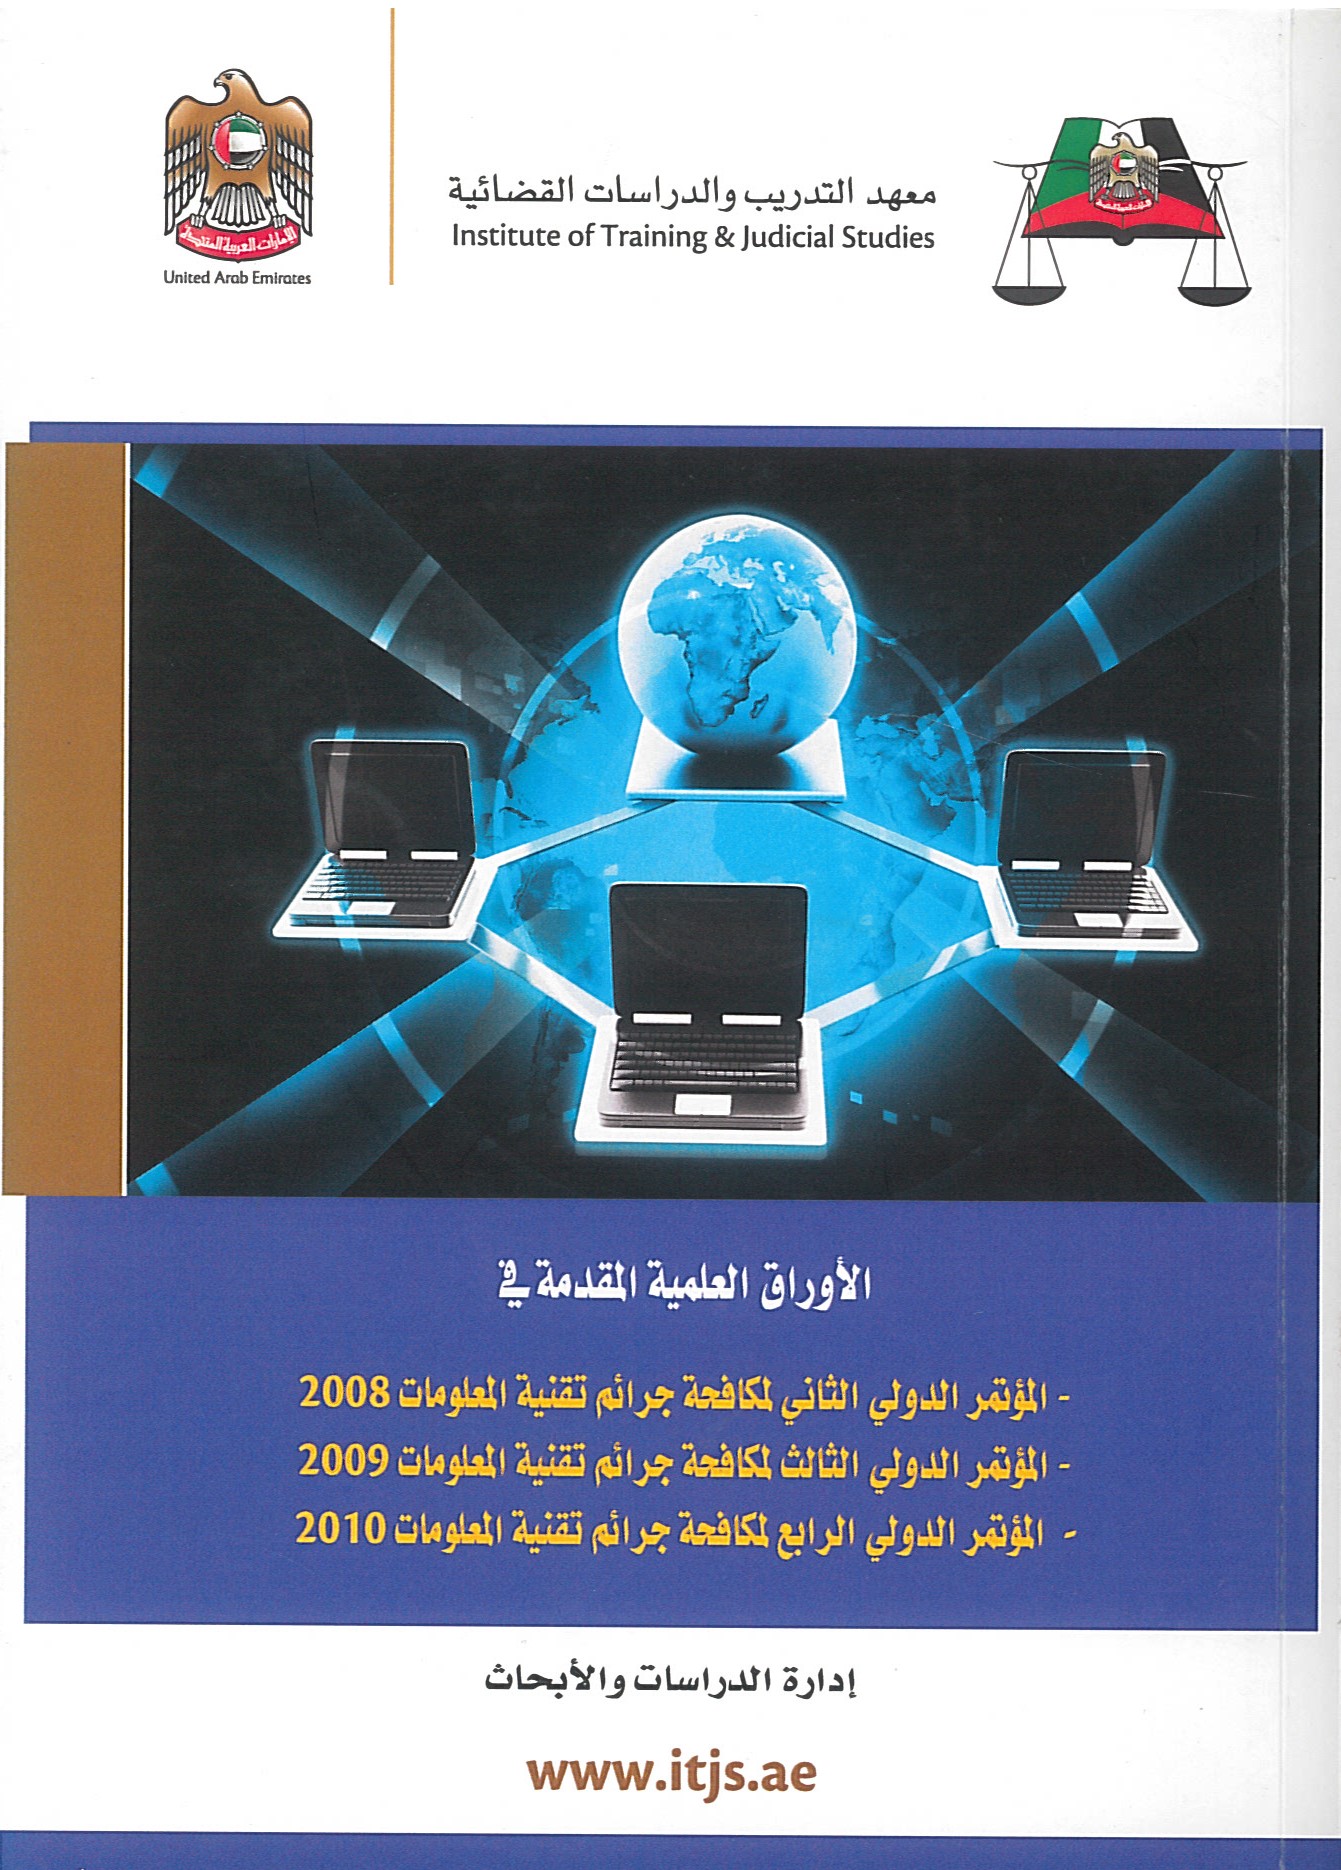 الأوراق العلمية المقدمة للمؤتمر الدولي الثاني والثالث والرابع لمكافحة جرائم تقنية المعلومات